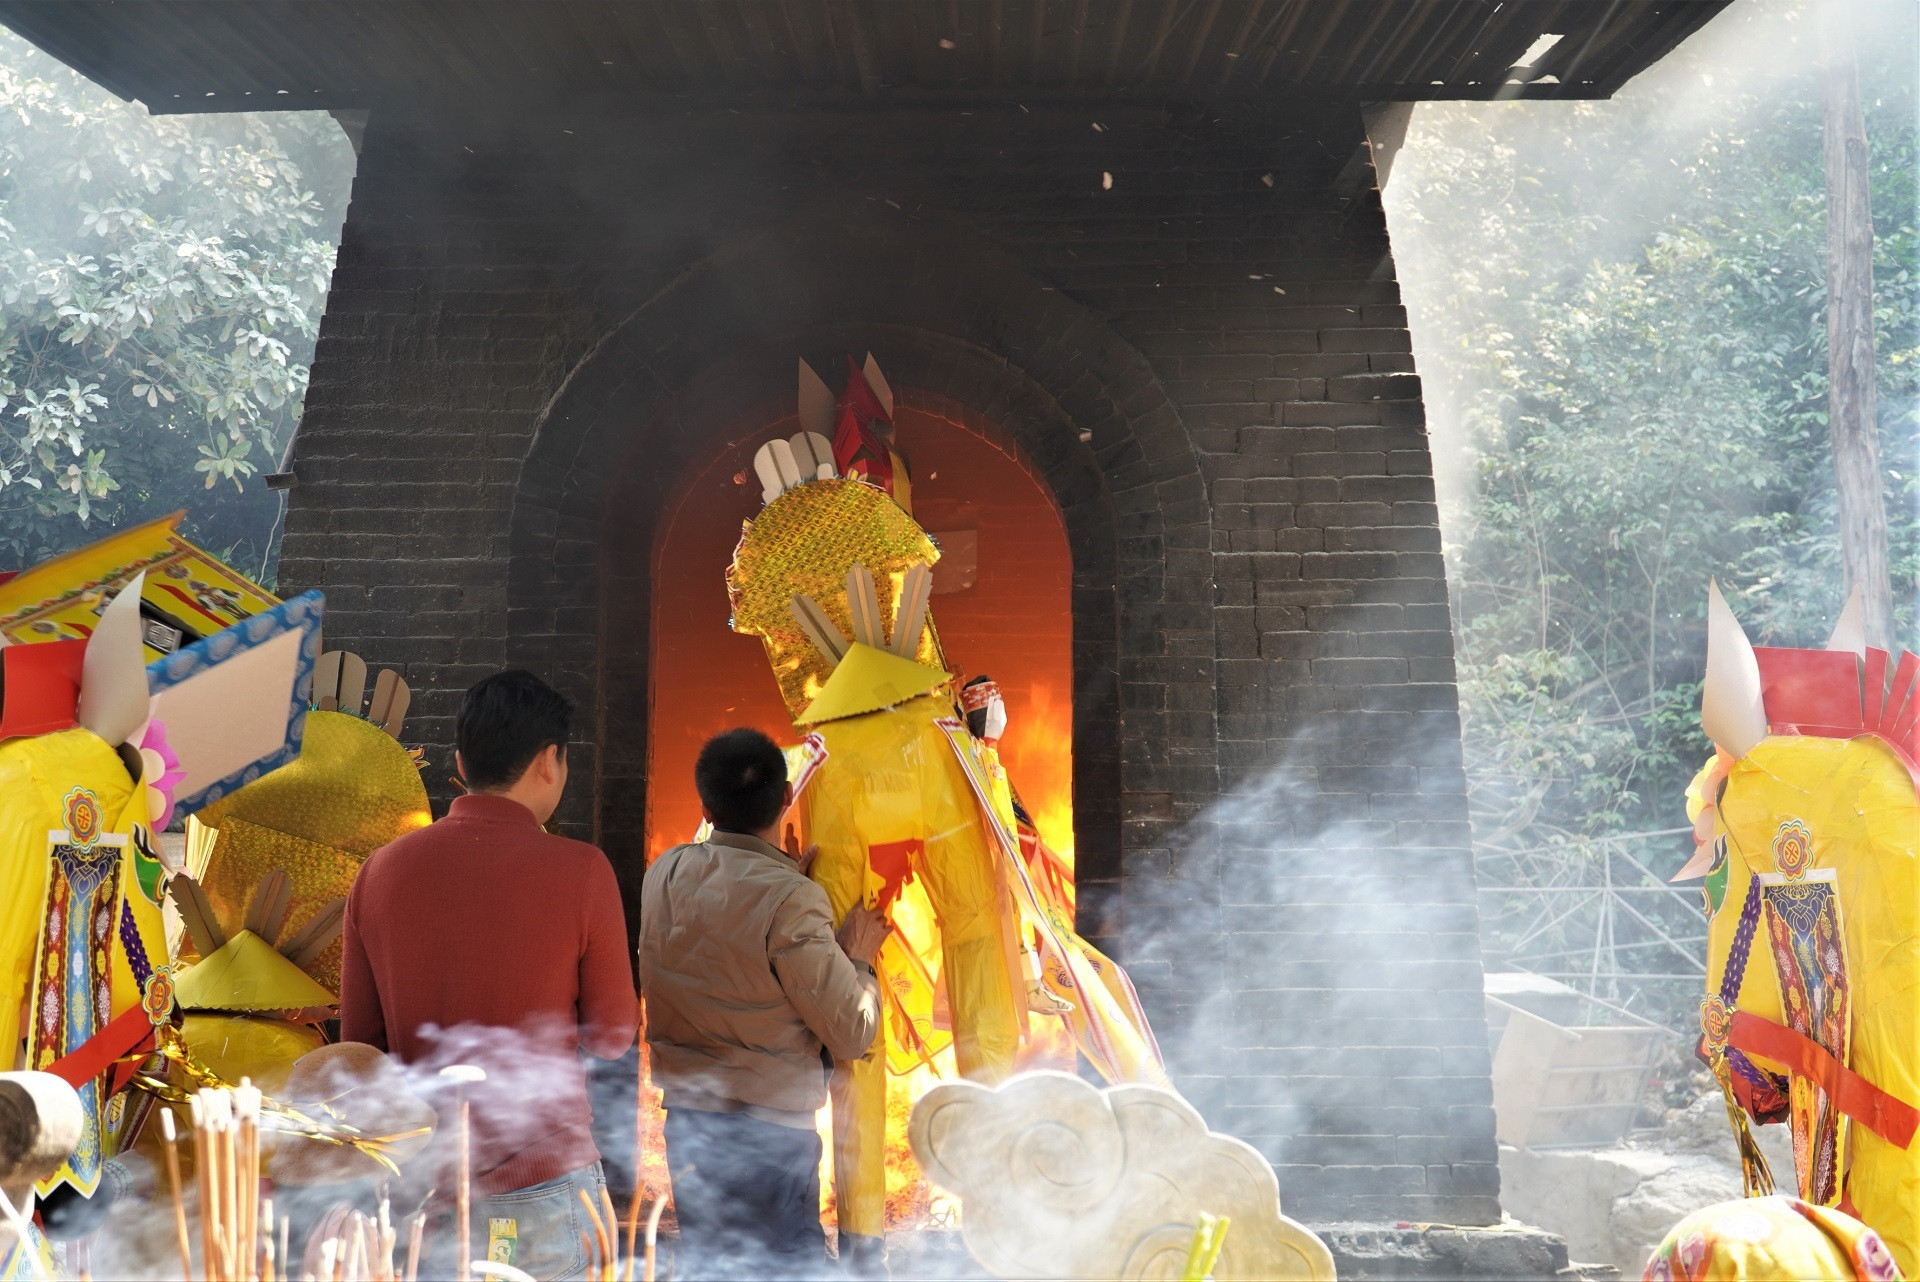 Đua nhau đốt ngựa giấy khủng xin lộc tại ngôi đền nổi tiếng linh thiêng - 8